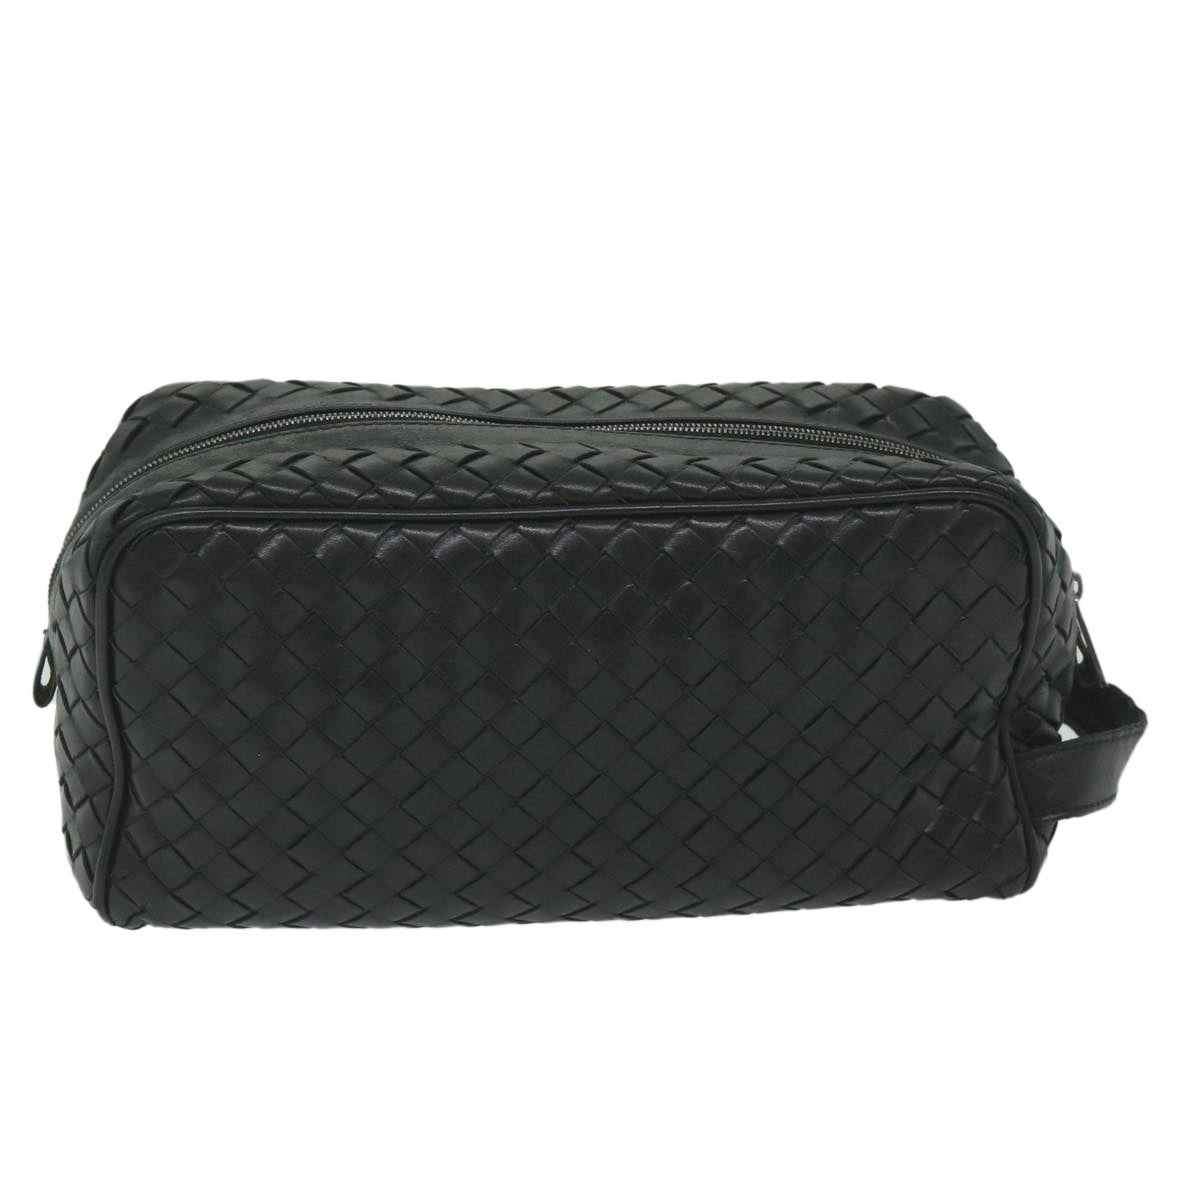 BOTTEGA VENETA INTRECCIATO Clutch Bag Leather Black Auth 59740 - 0